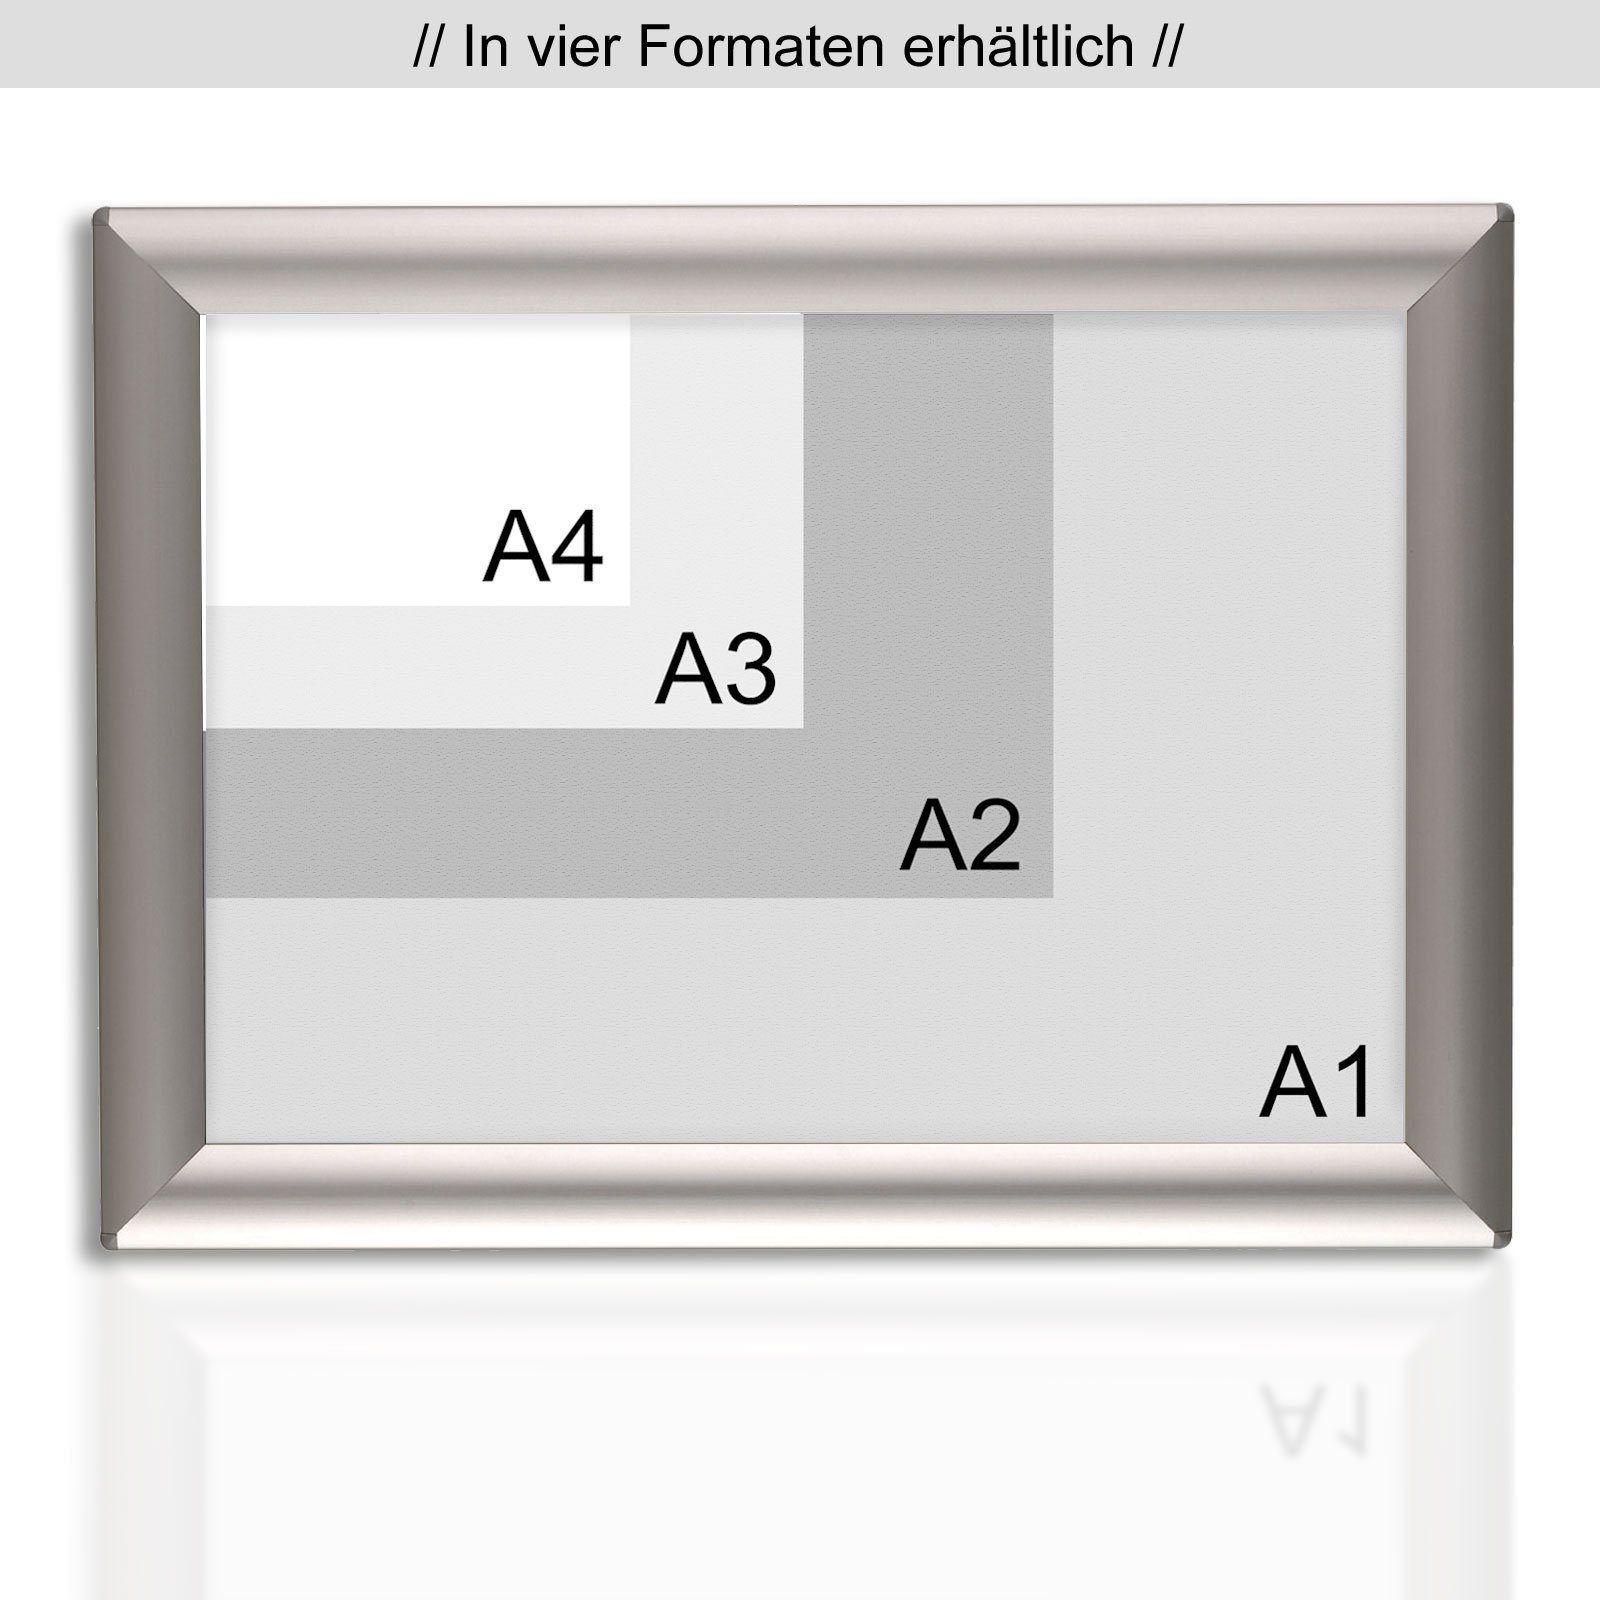 Opti-Clic Gegehrte of Wechselrahmen für Kanten, Rahmen, Boards Plakatrahmen, A4 Master Rahmen Größen, 4